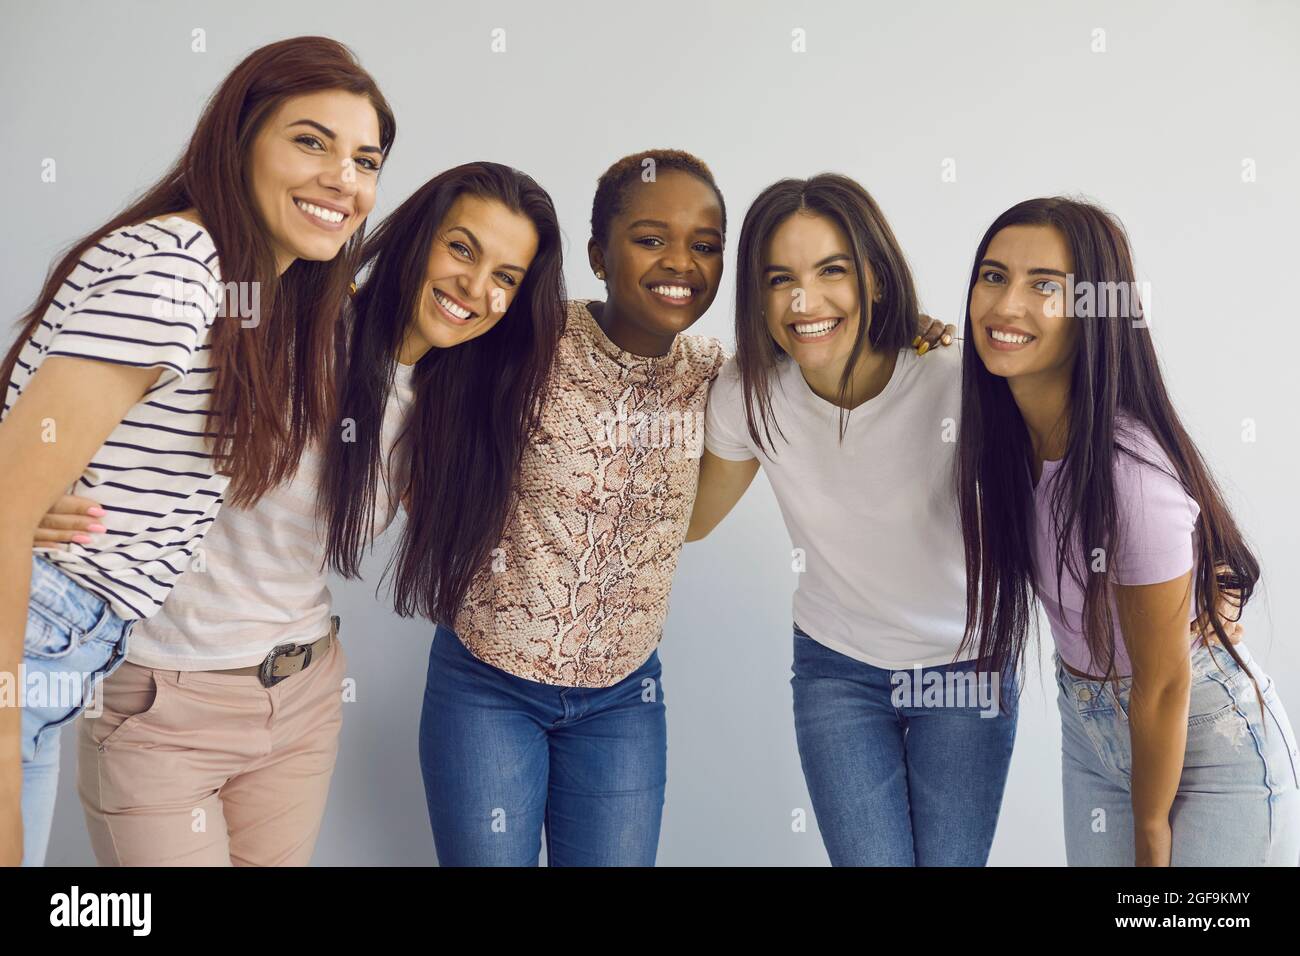 Porträt von fünf jungen, multirassischen Frauen, die zusammen stehen und vor der Kamera lächeln. Stockfoto